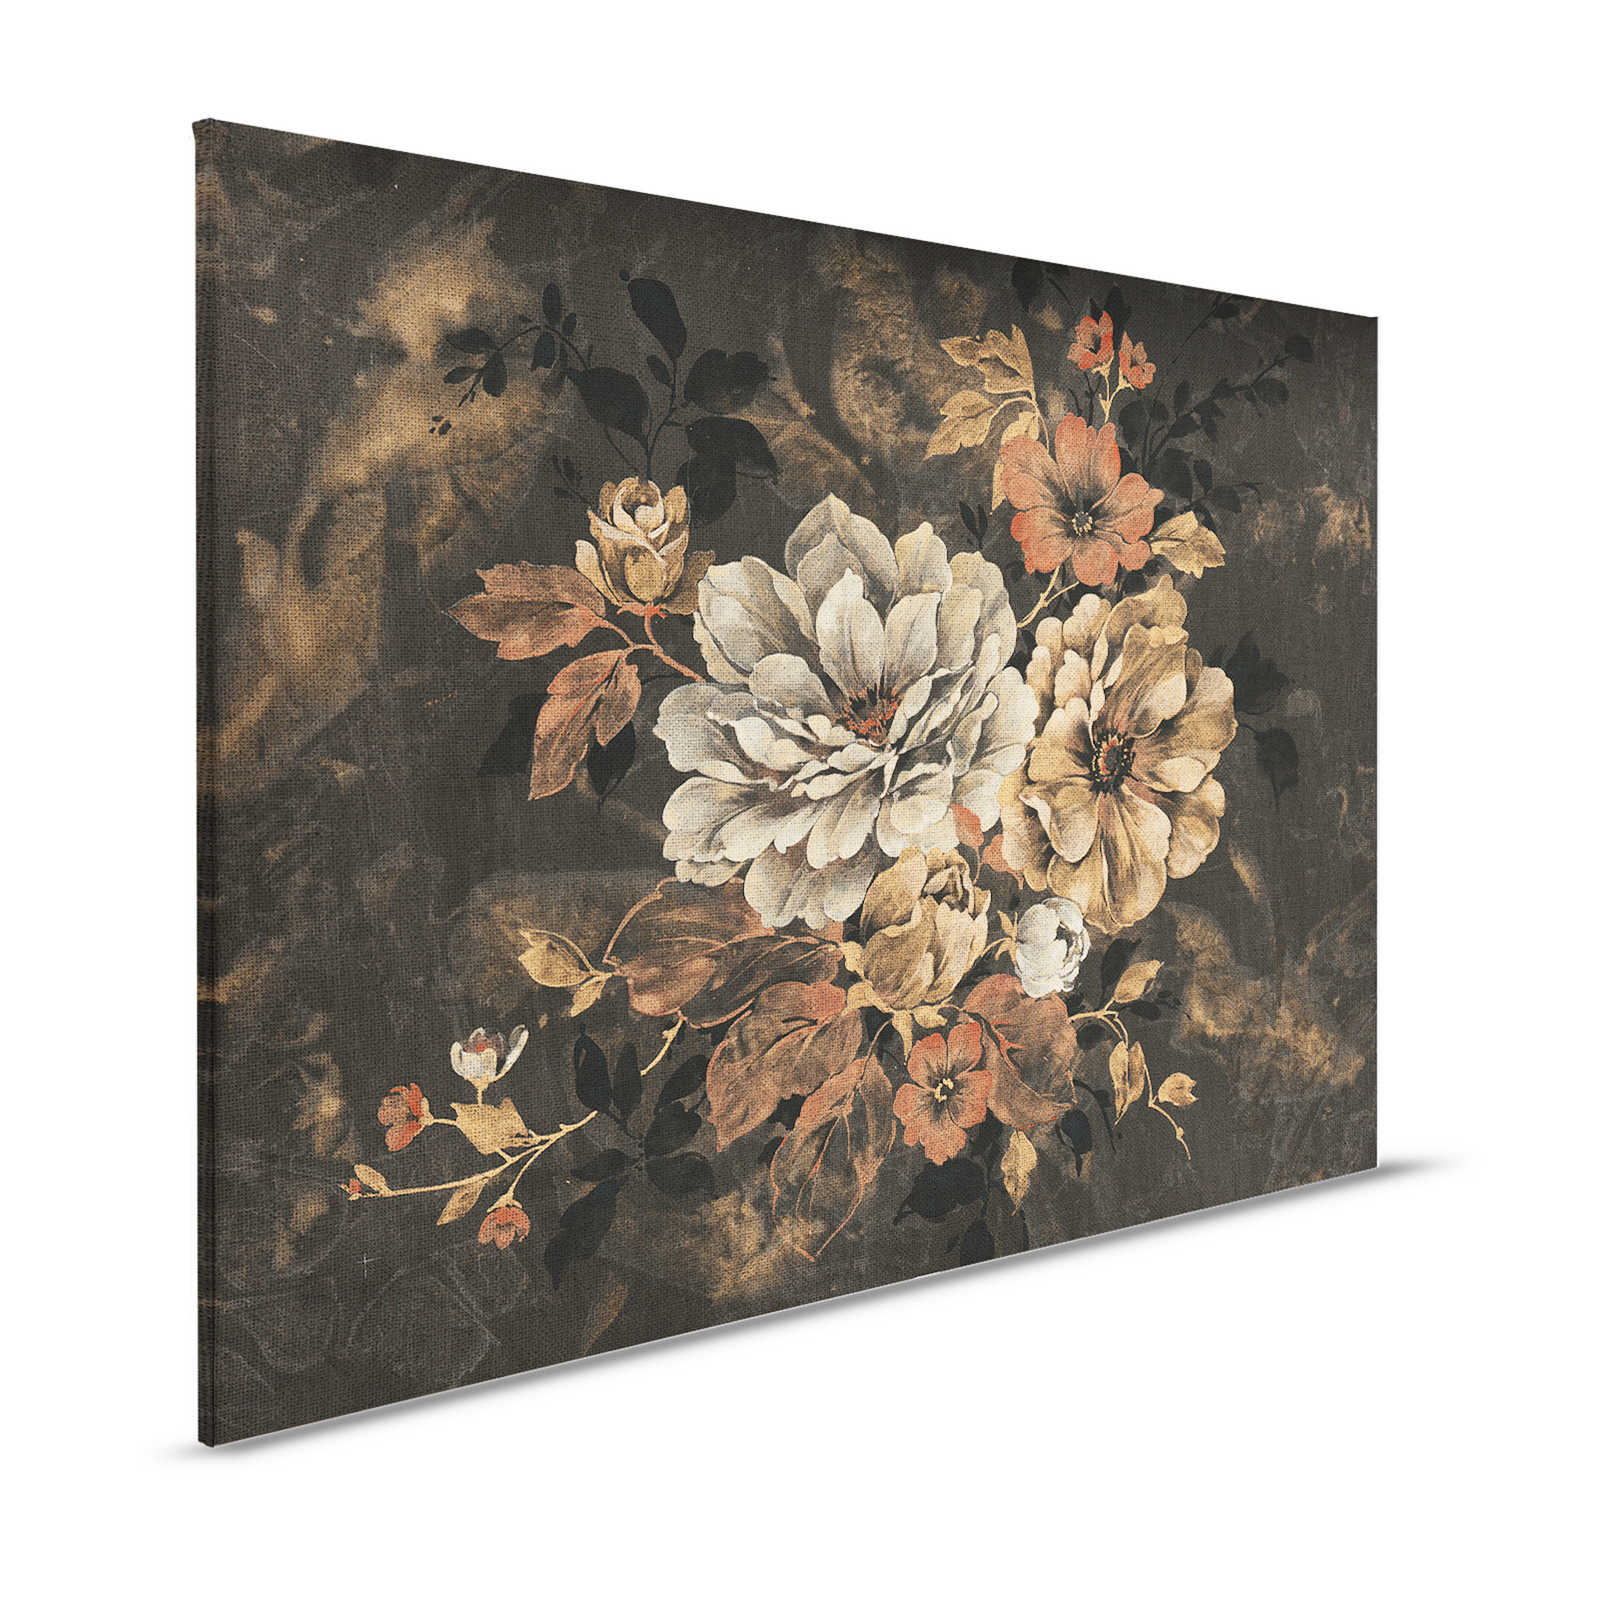 Cuadro lienzo diseño floral, pintura al óleo con aspecto vintage - 1,20 m x 0,80 m
